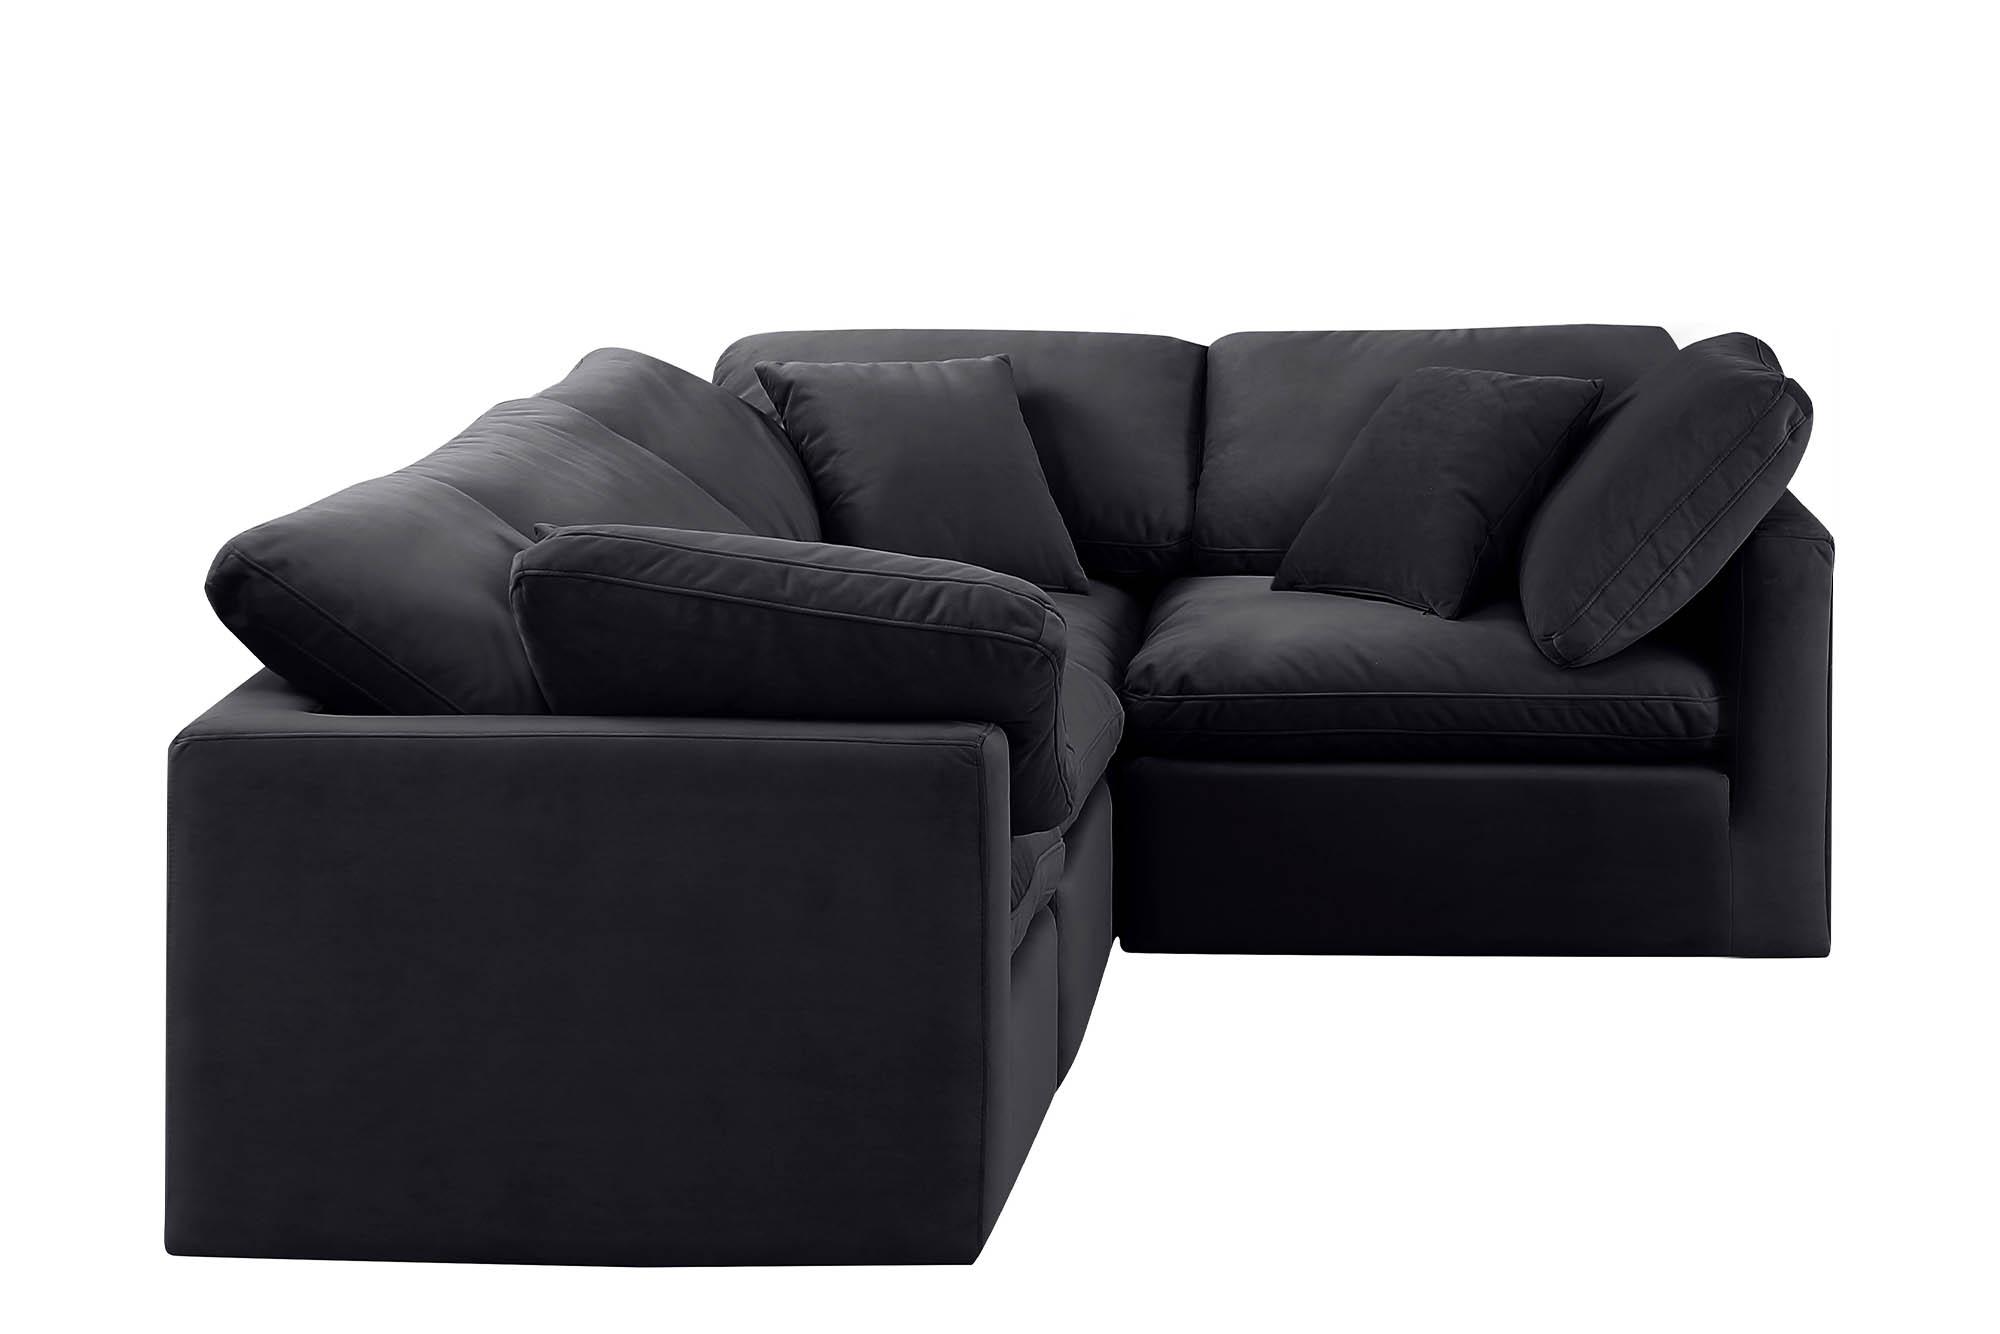 

    
Meridian Furniture INDULGE 147Black-Sec4C Modular Sectional Sofa Black 147Black-Sec4C
